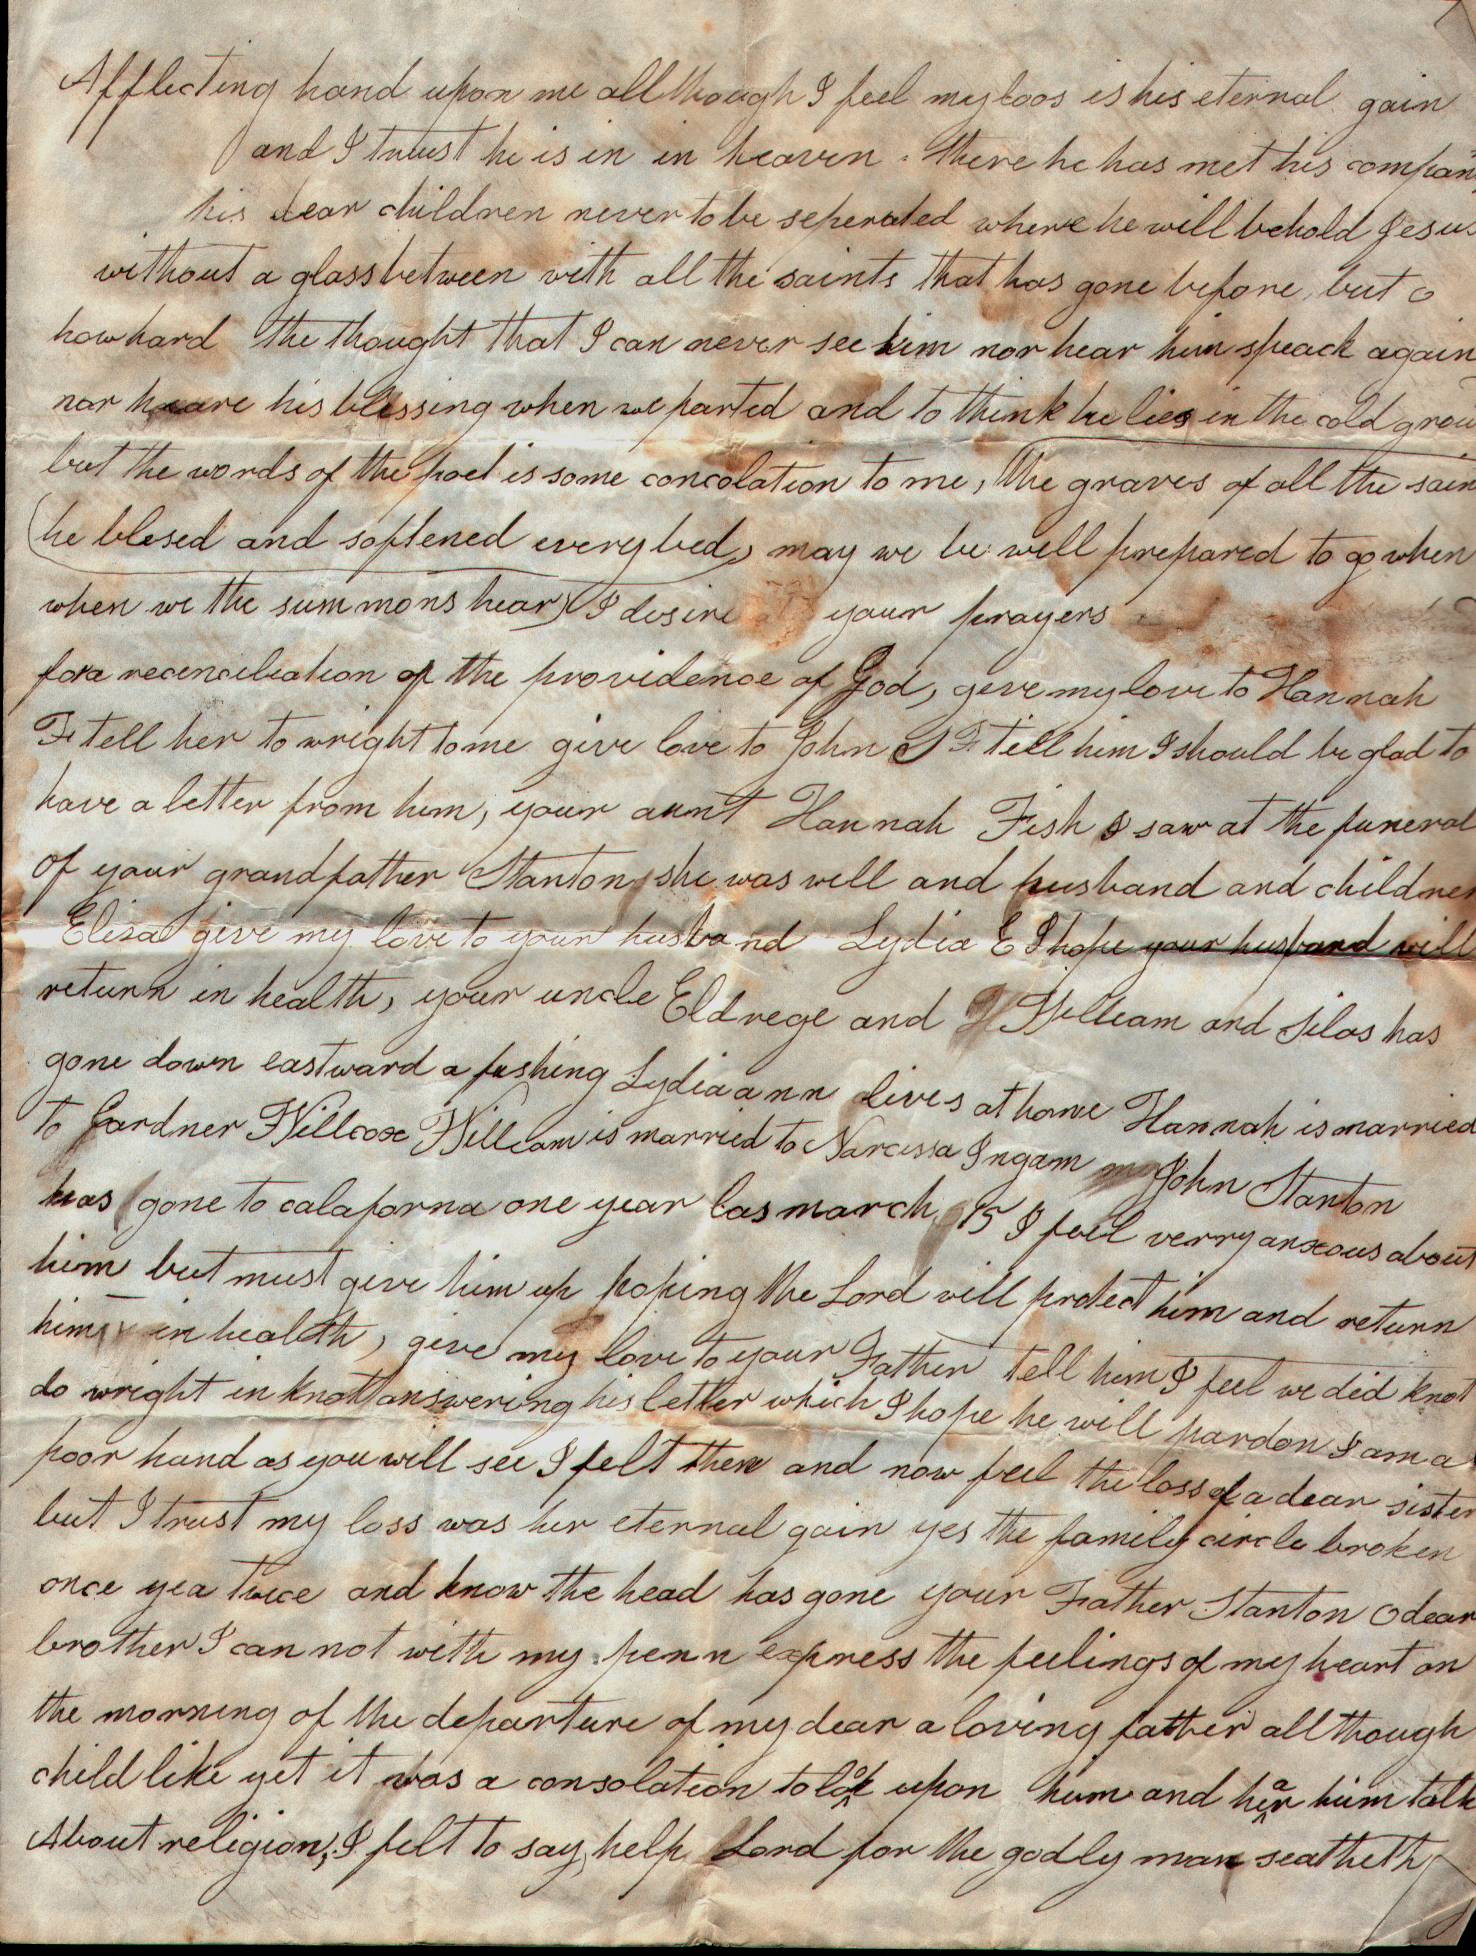 1851 Letter from Lydia (Stanton) Spicer - PG 3